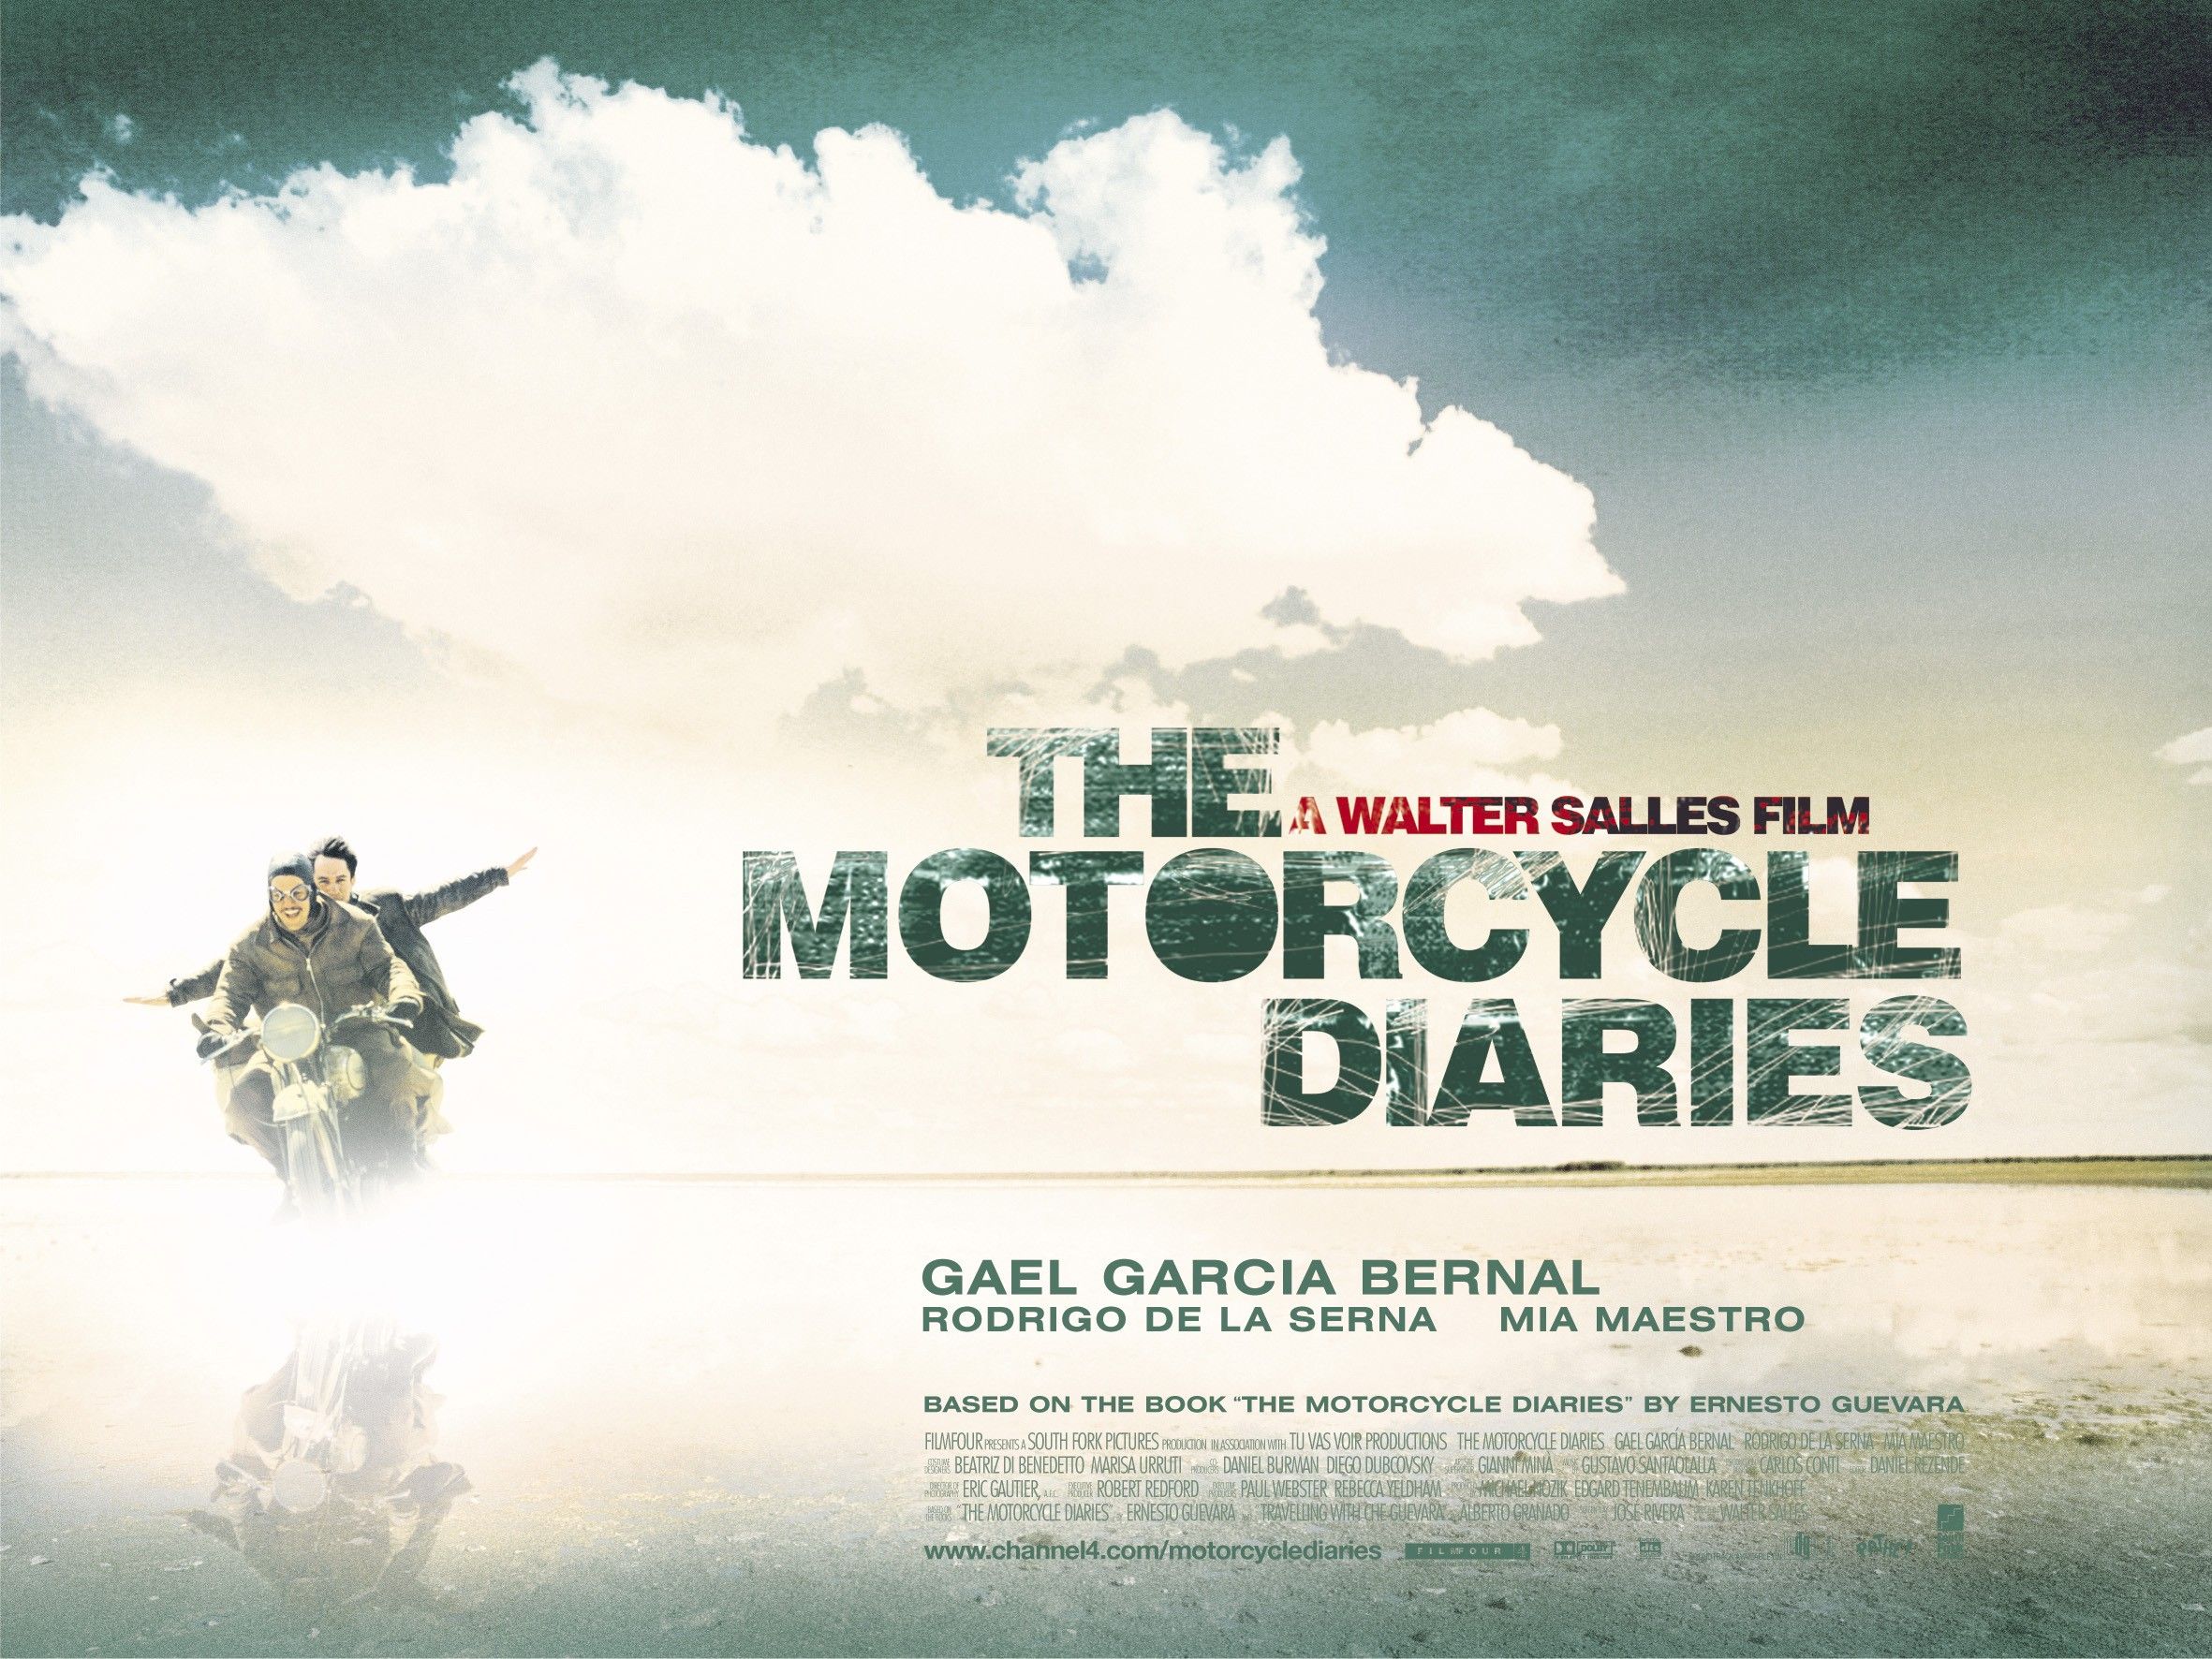 2362x1772px Motorcycle Diaries (895.65 KB).07.2015